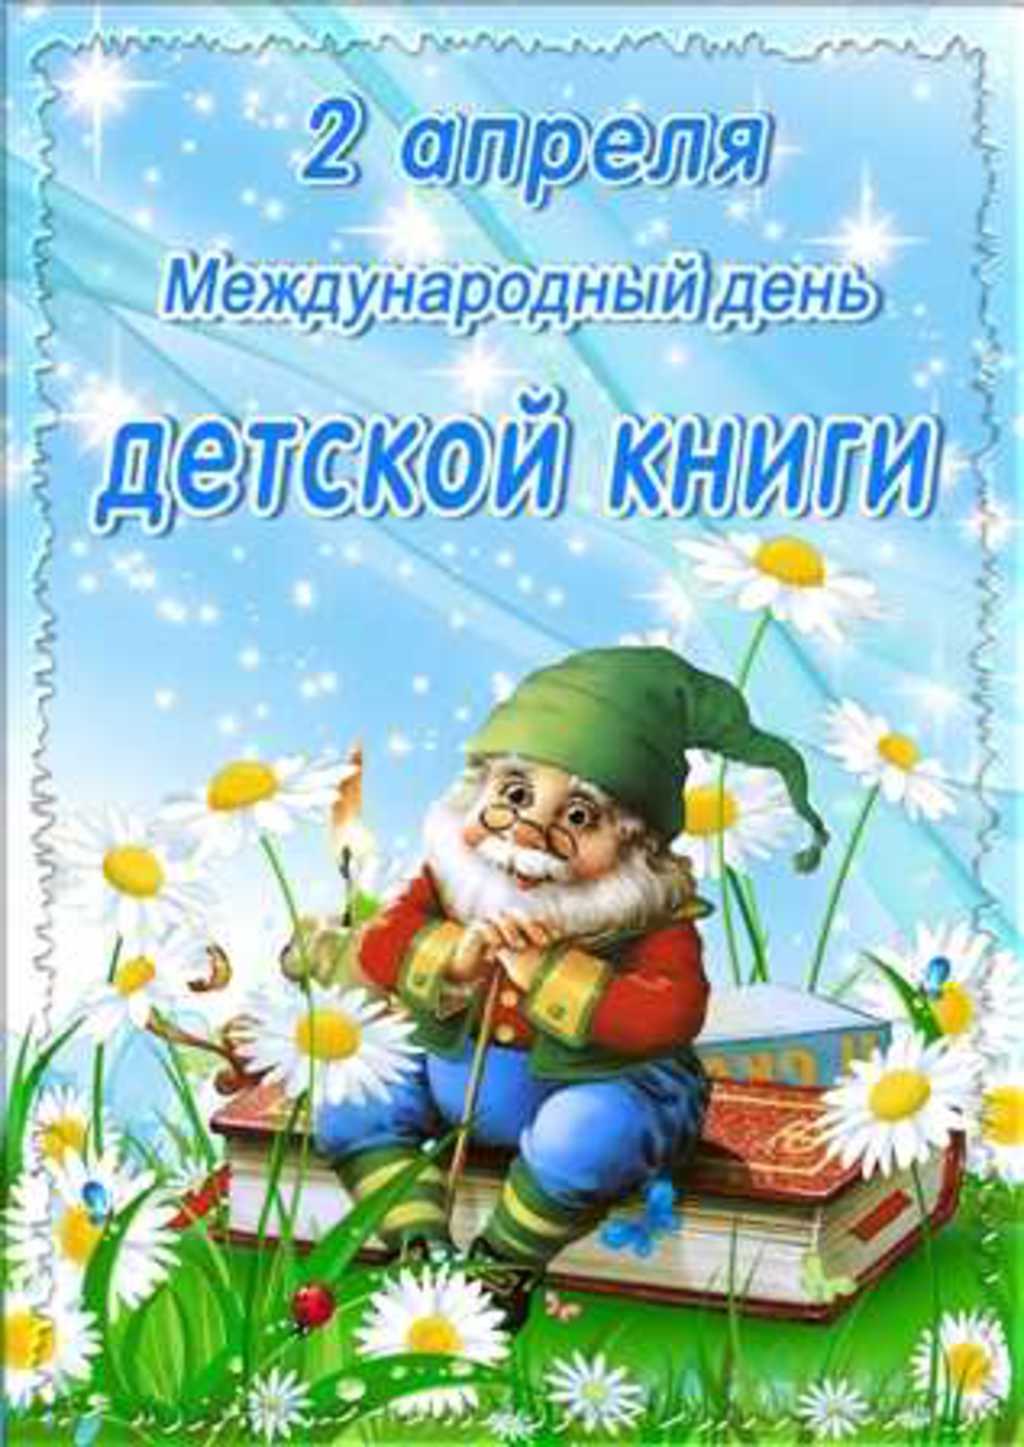 Новые Календарь праздников всемирный день детской книги партнерам